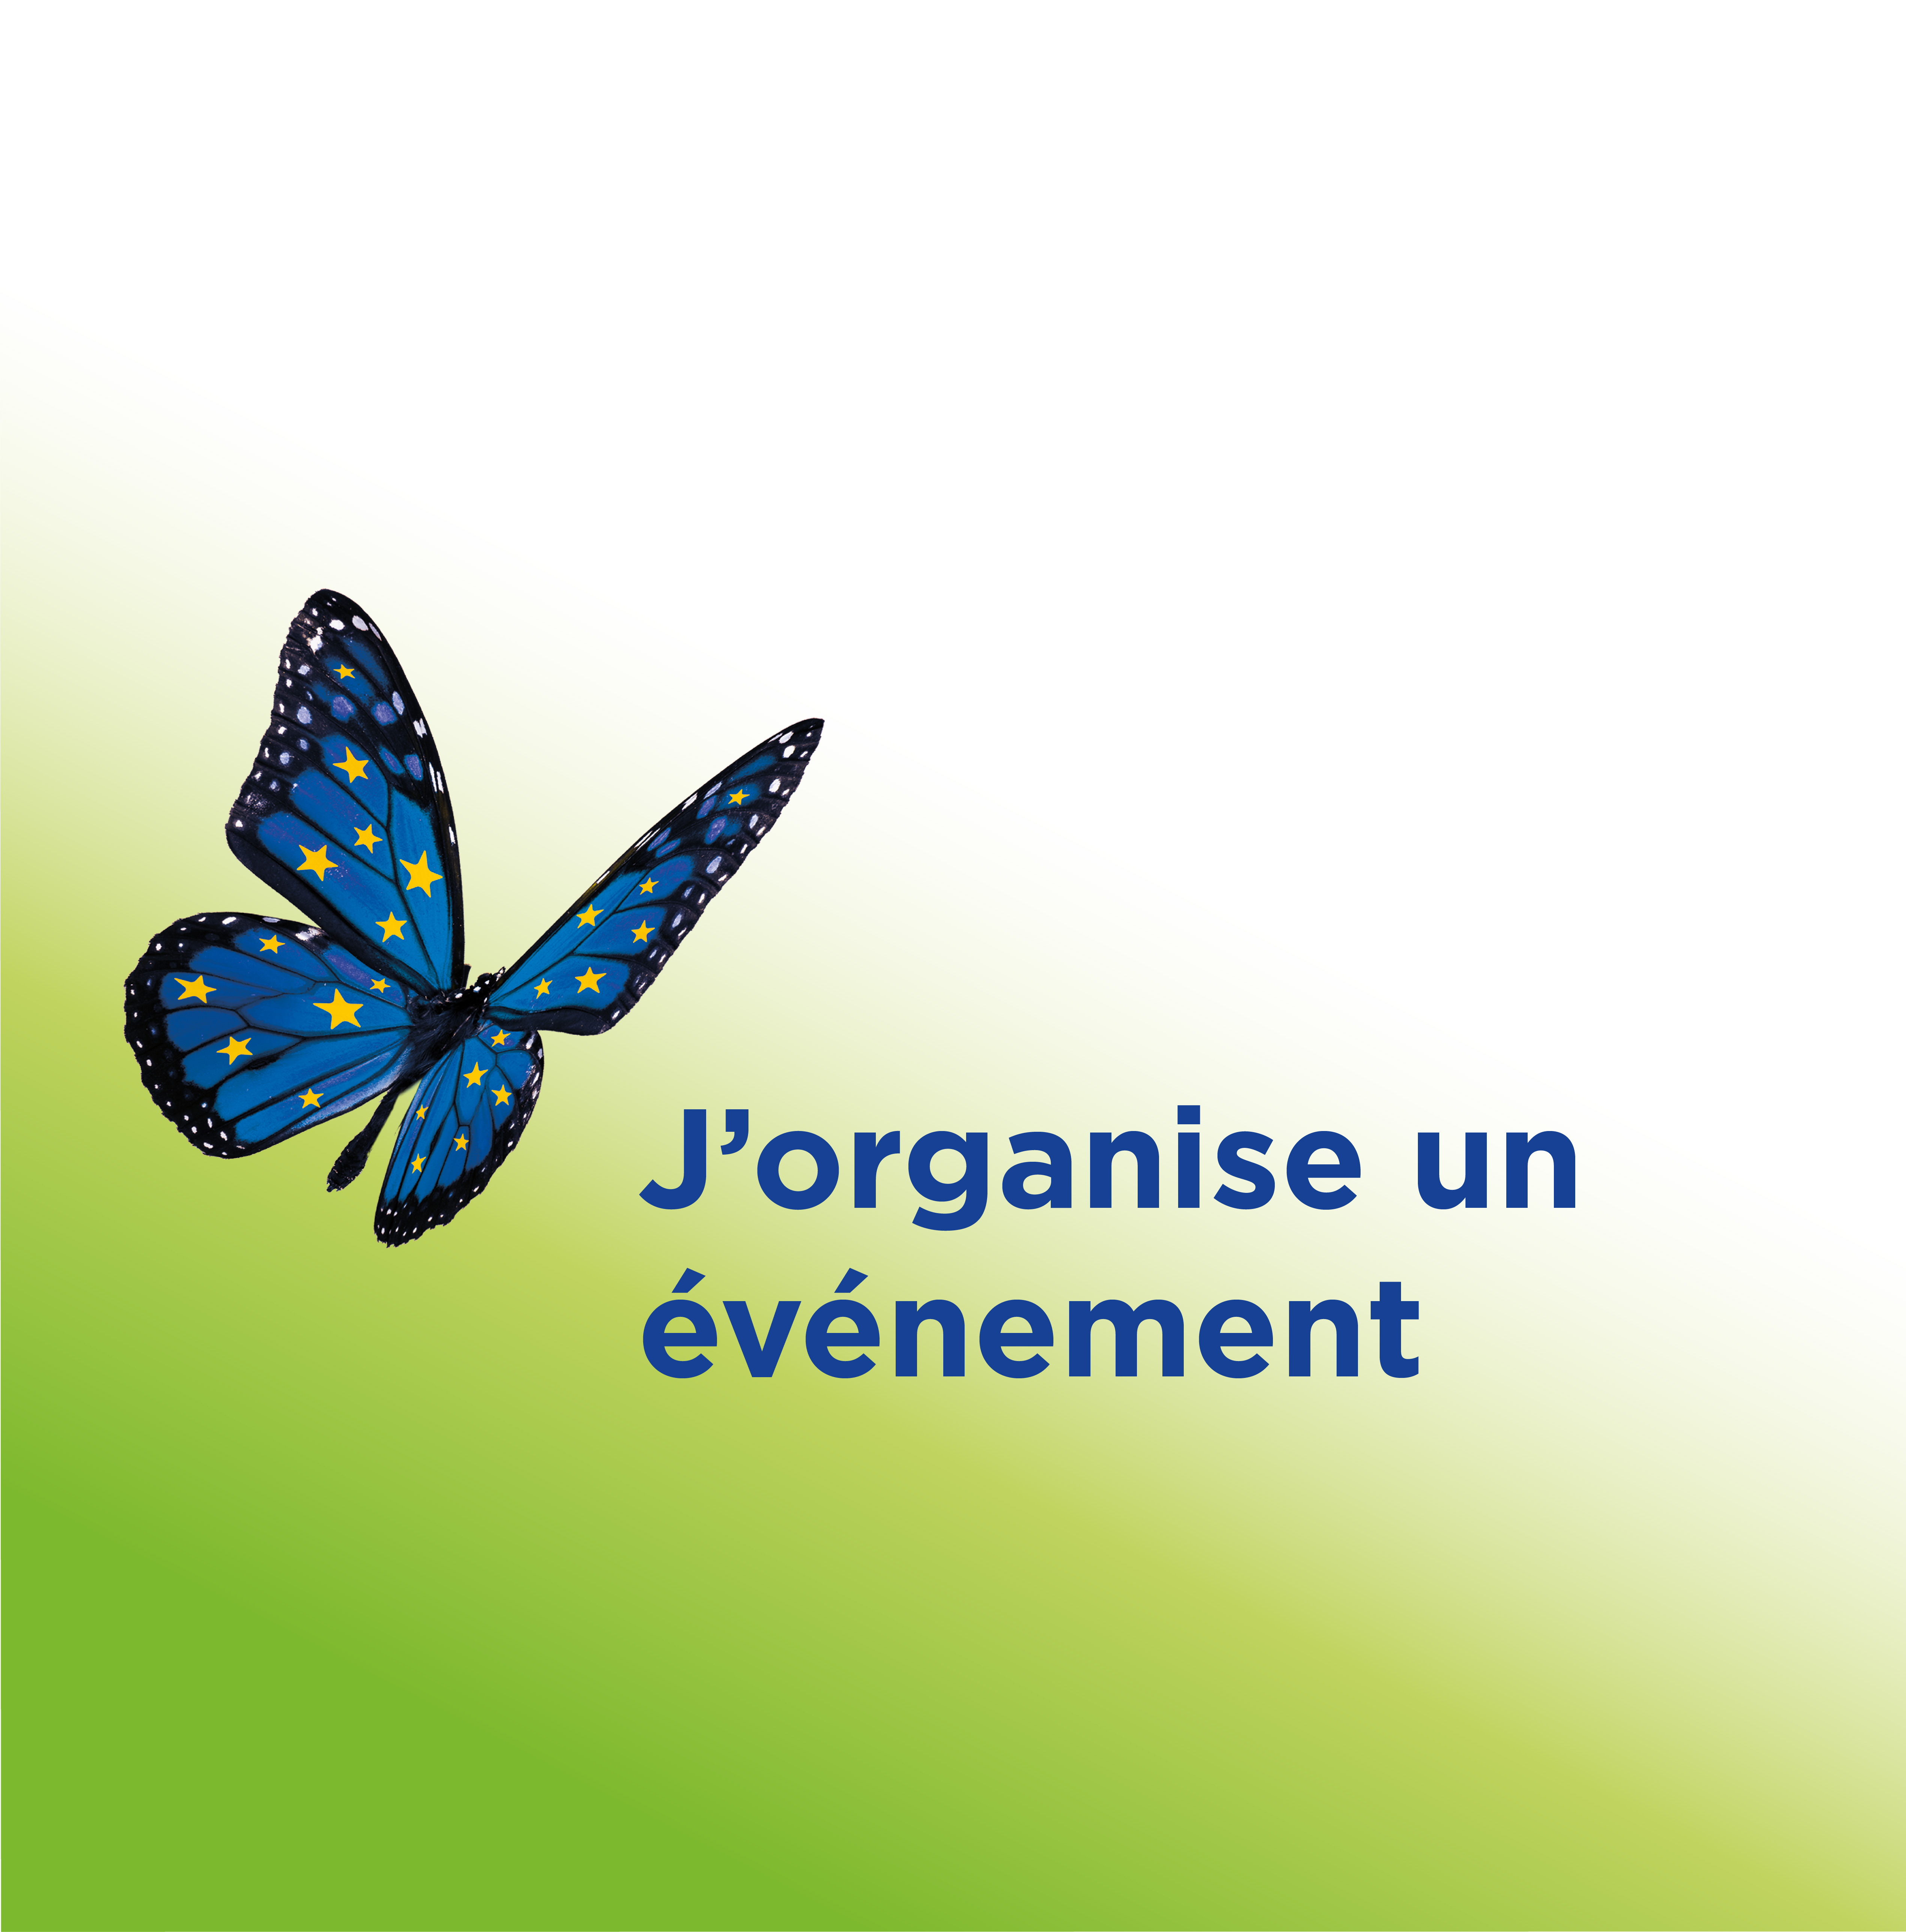 Organiser un événement pour le Joli Mois de l'Europe en Nouvelle-Aquitaine